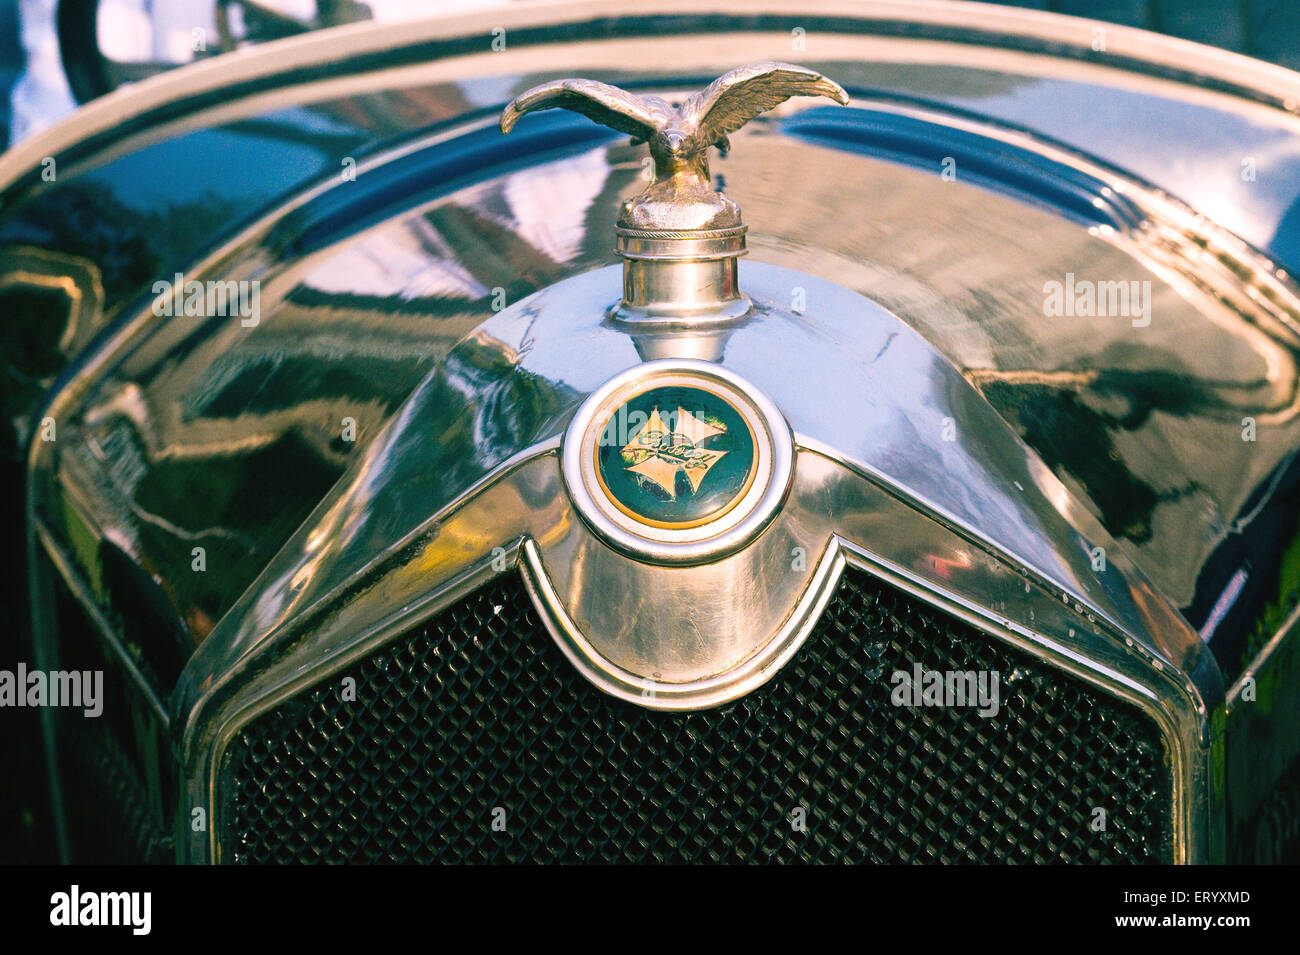 https://c8.alamy.com/compde/eryxmd/vintage-antike-auto-haube-motorhaube-emblem-ornament-wolseley-1924-eryxmd.jpg